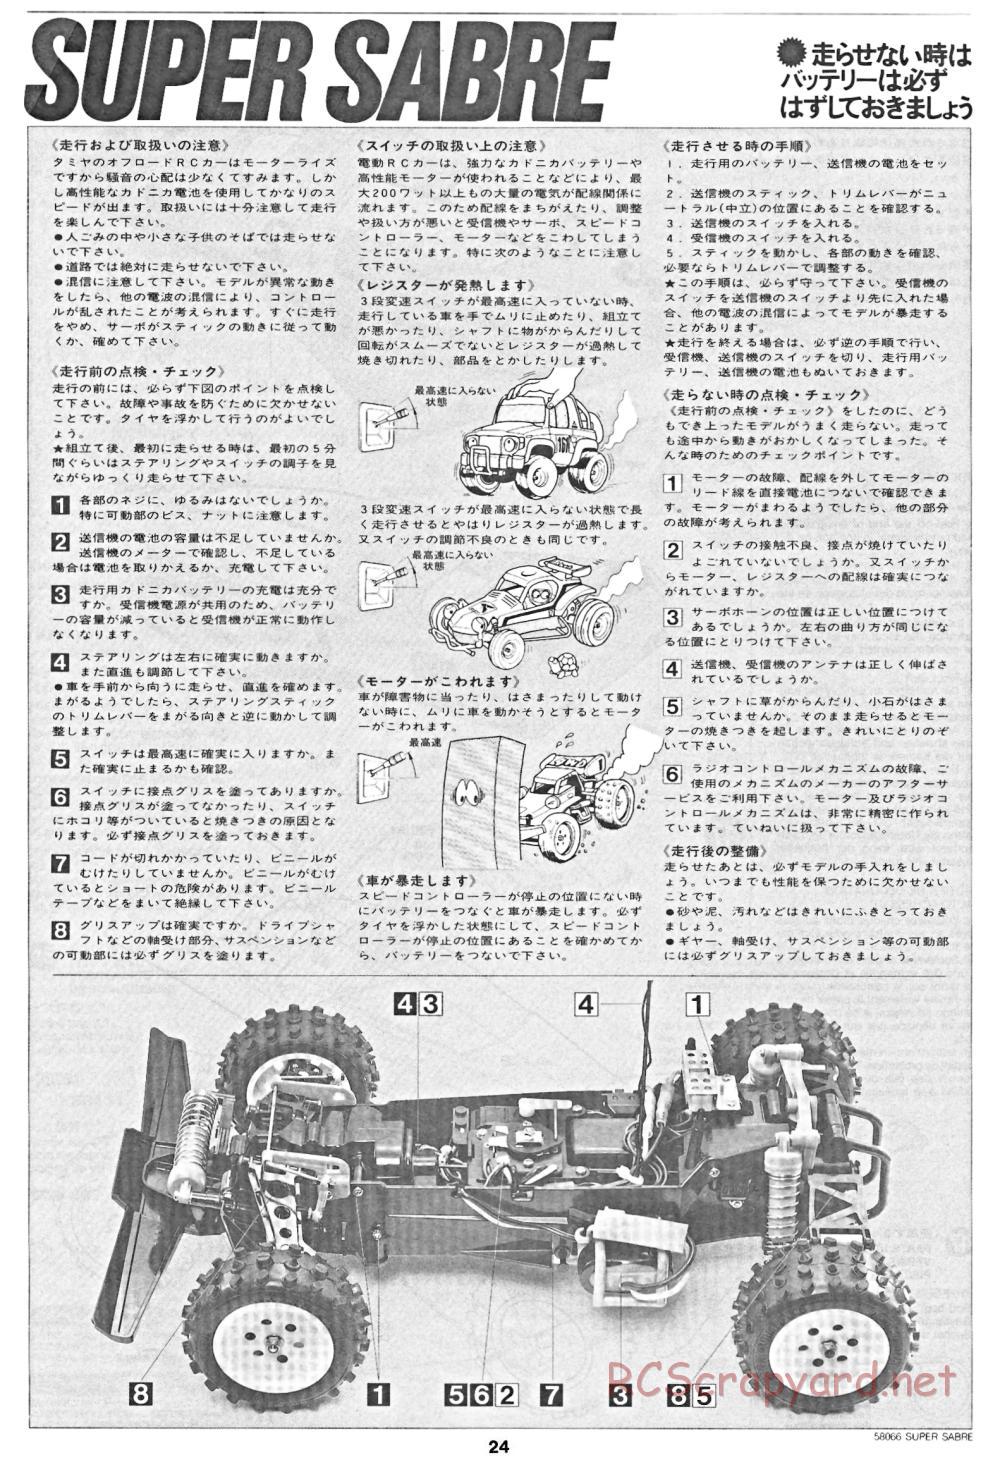 Tamiya - Super Sabre - 58066 - Manual - Page 24